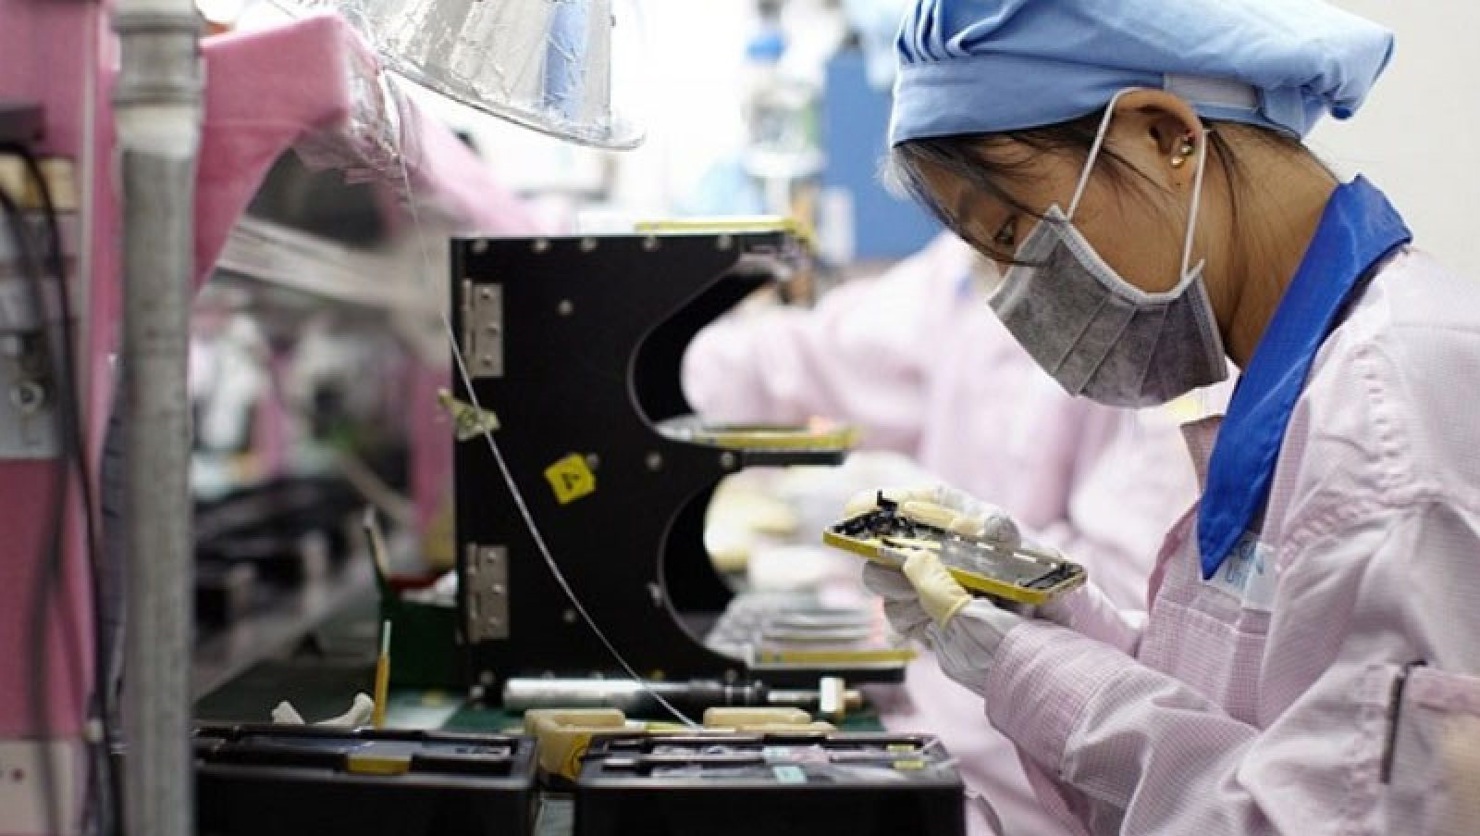 Từ cuối năm 2020, Apple sẽ khai thác các dây chuyền sản xuất tại Việt Nam thông qua đối tác Pegatron.